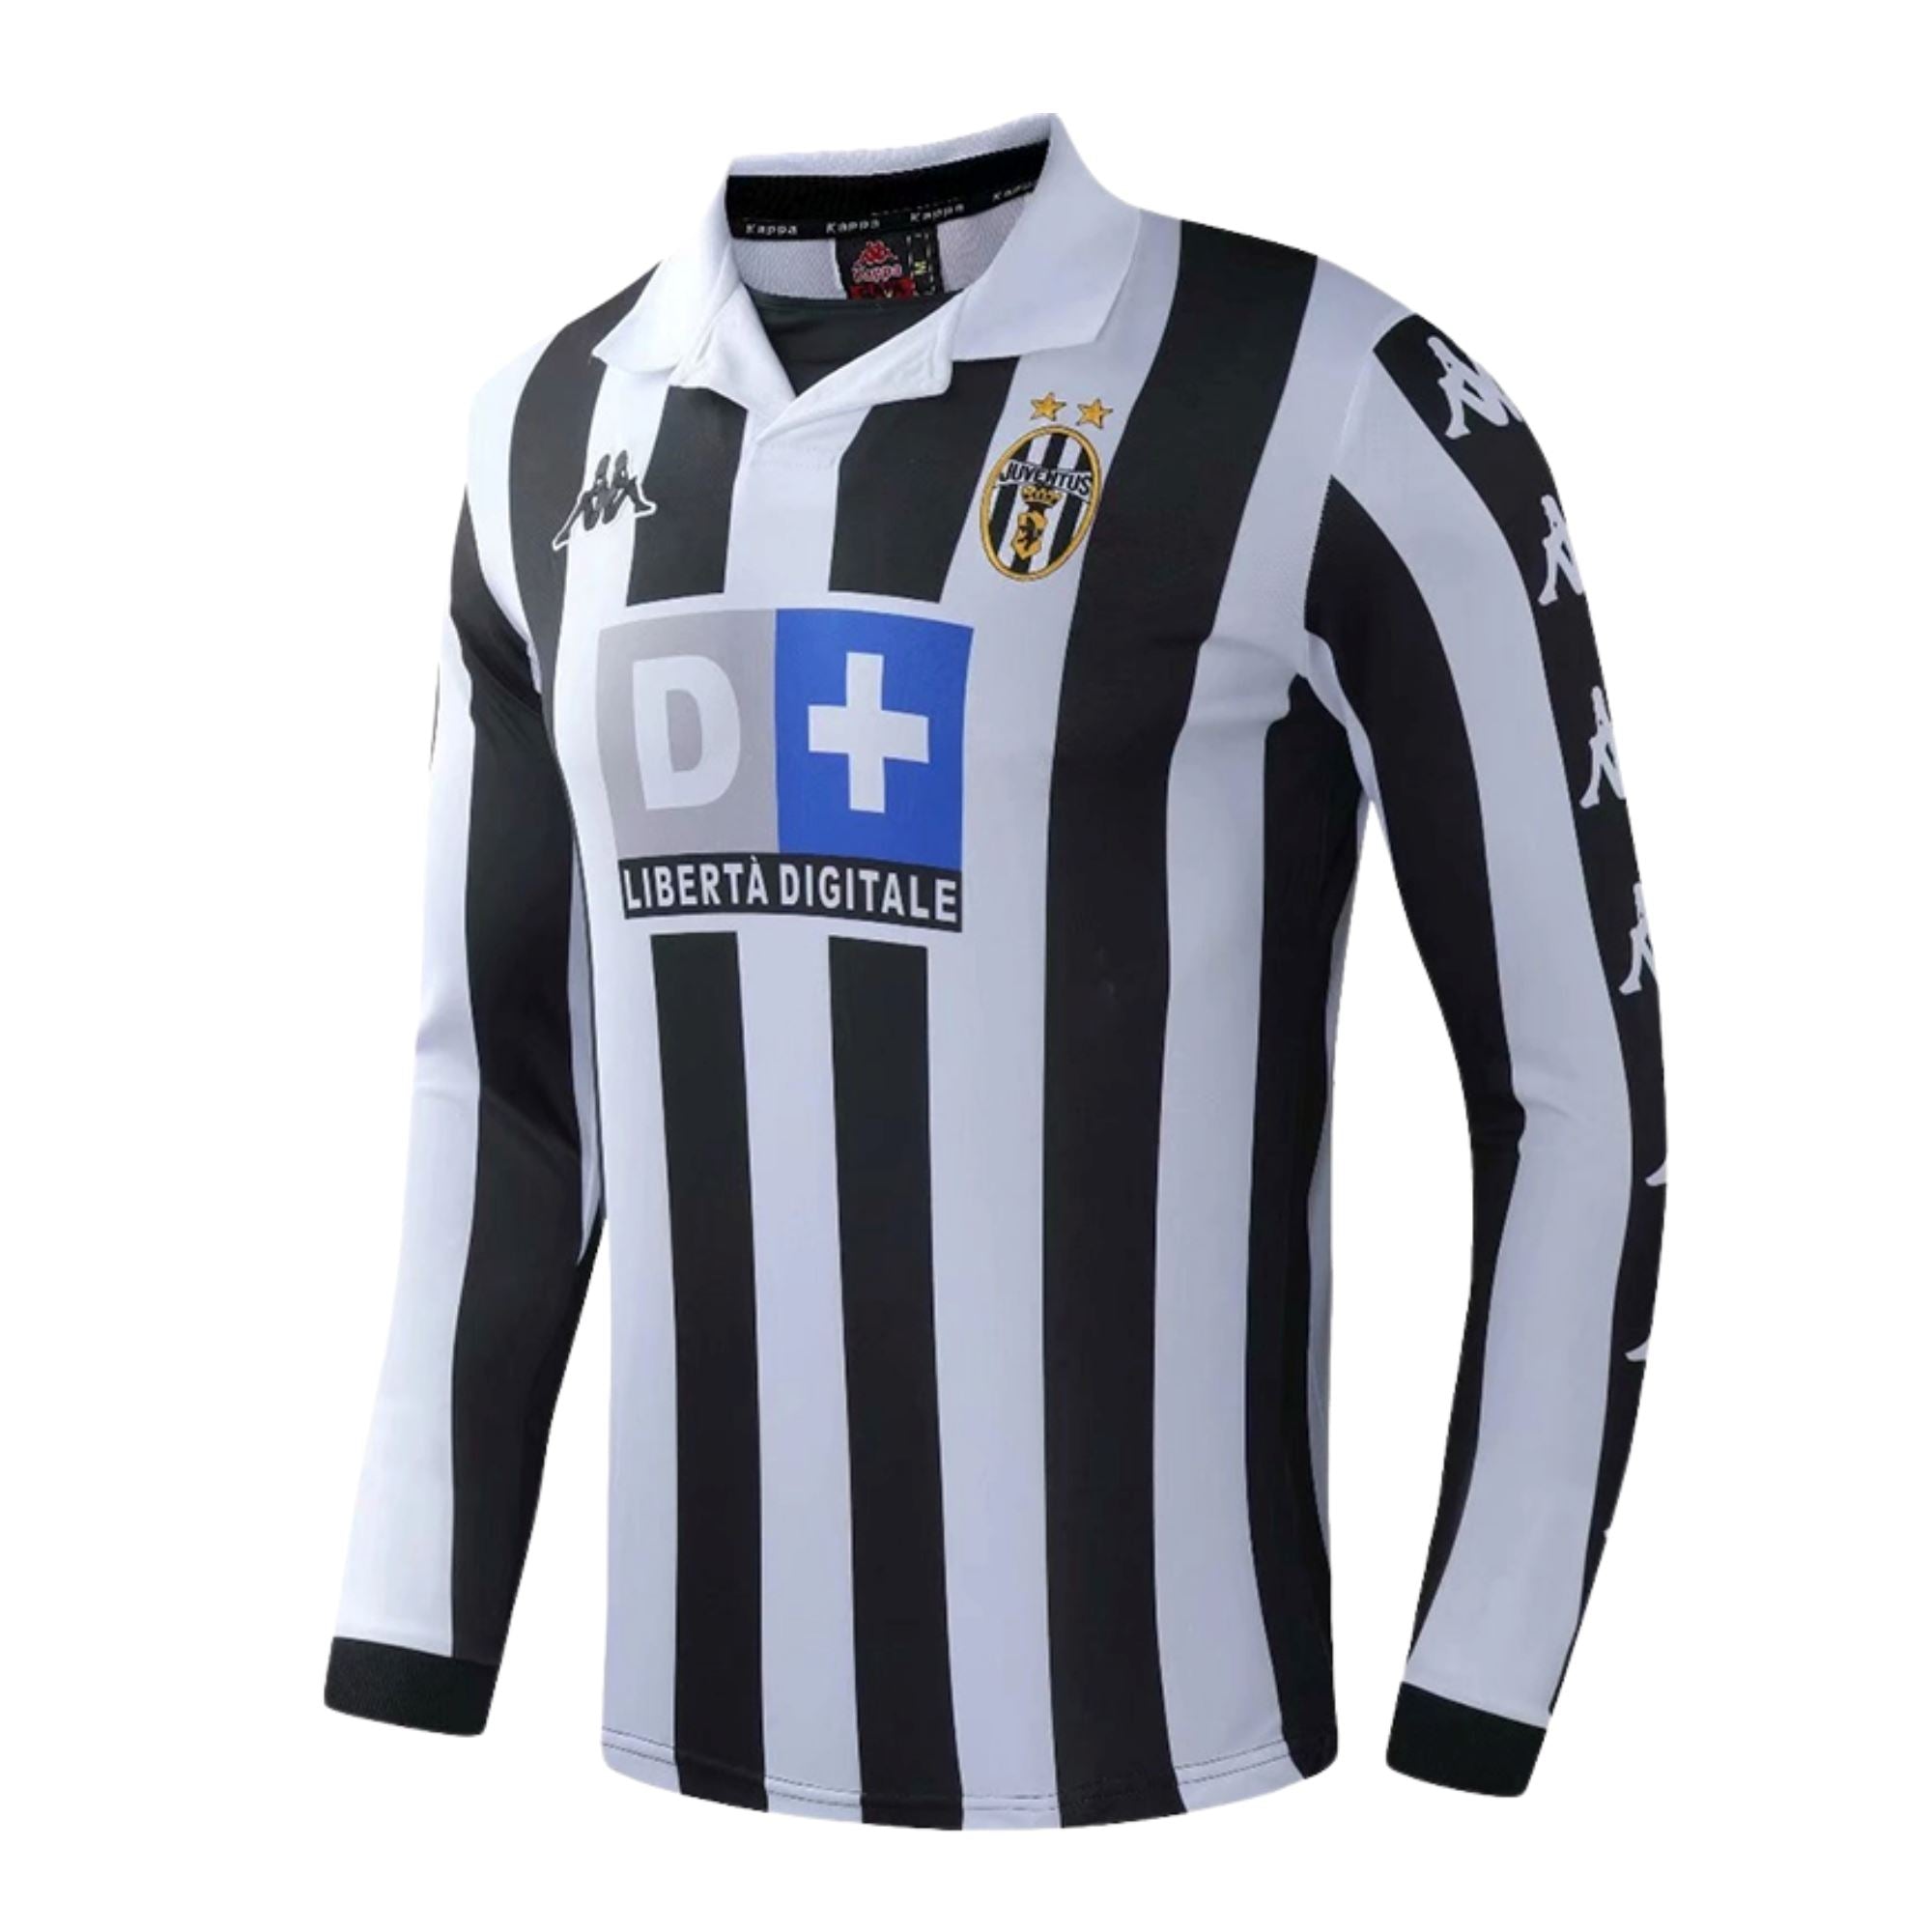 Juventus No18 Lemina Home Long Sleeves Jersey